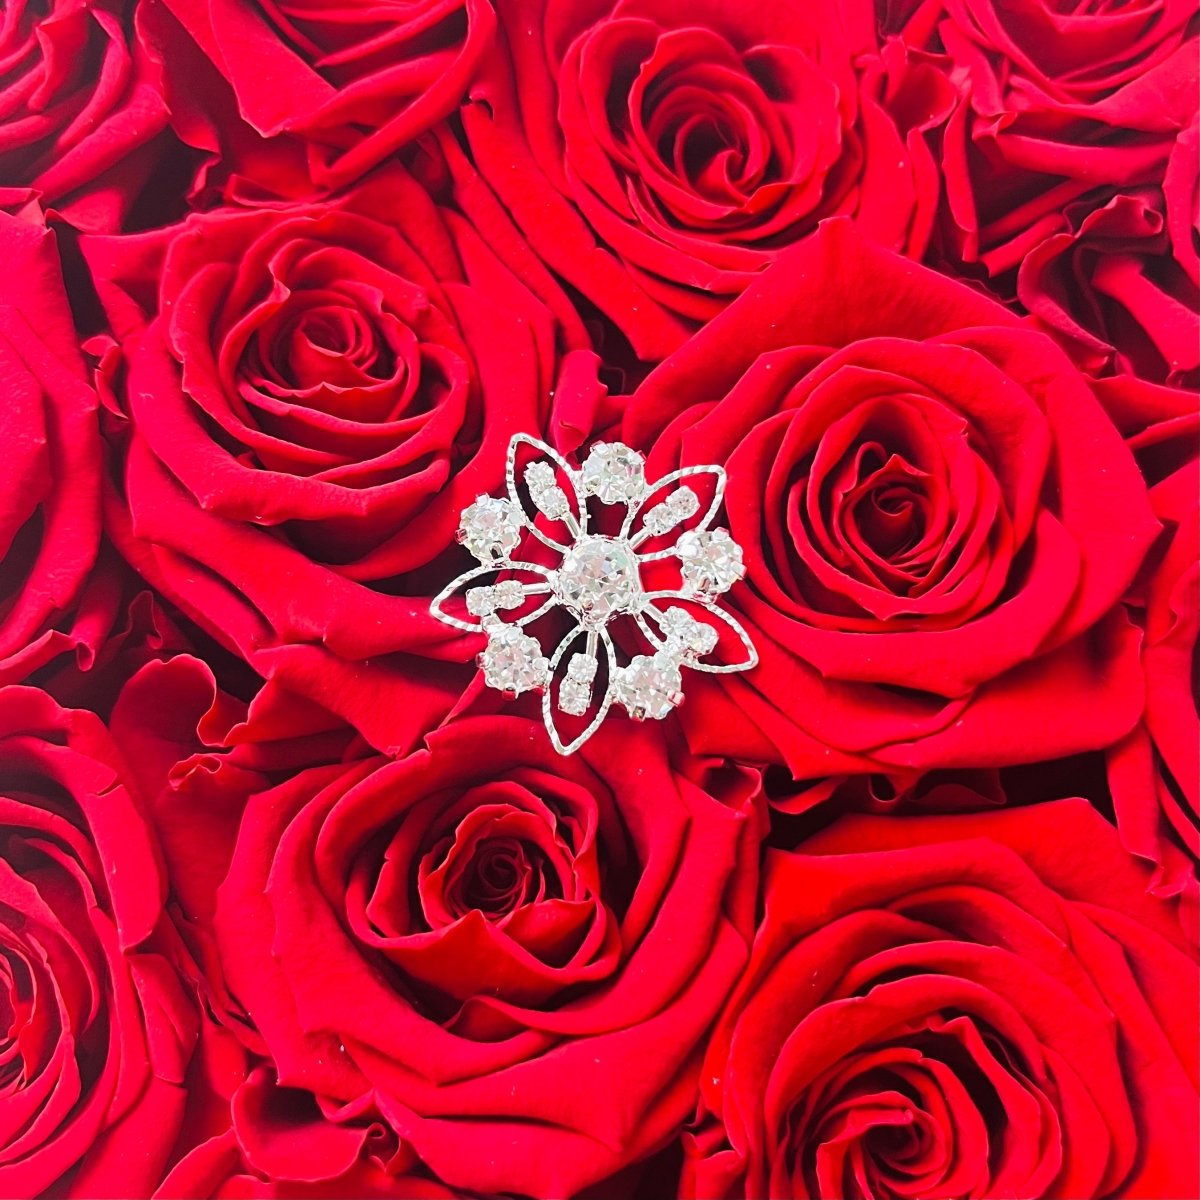 Diamanté Flower Pin - Silver Diamanté option - One Year Rose